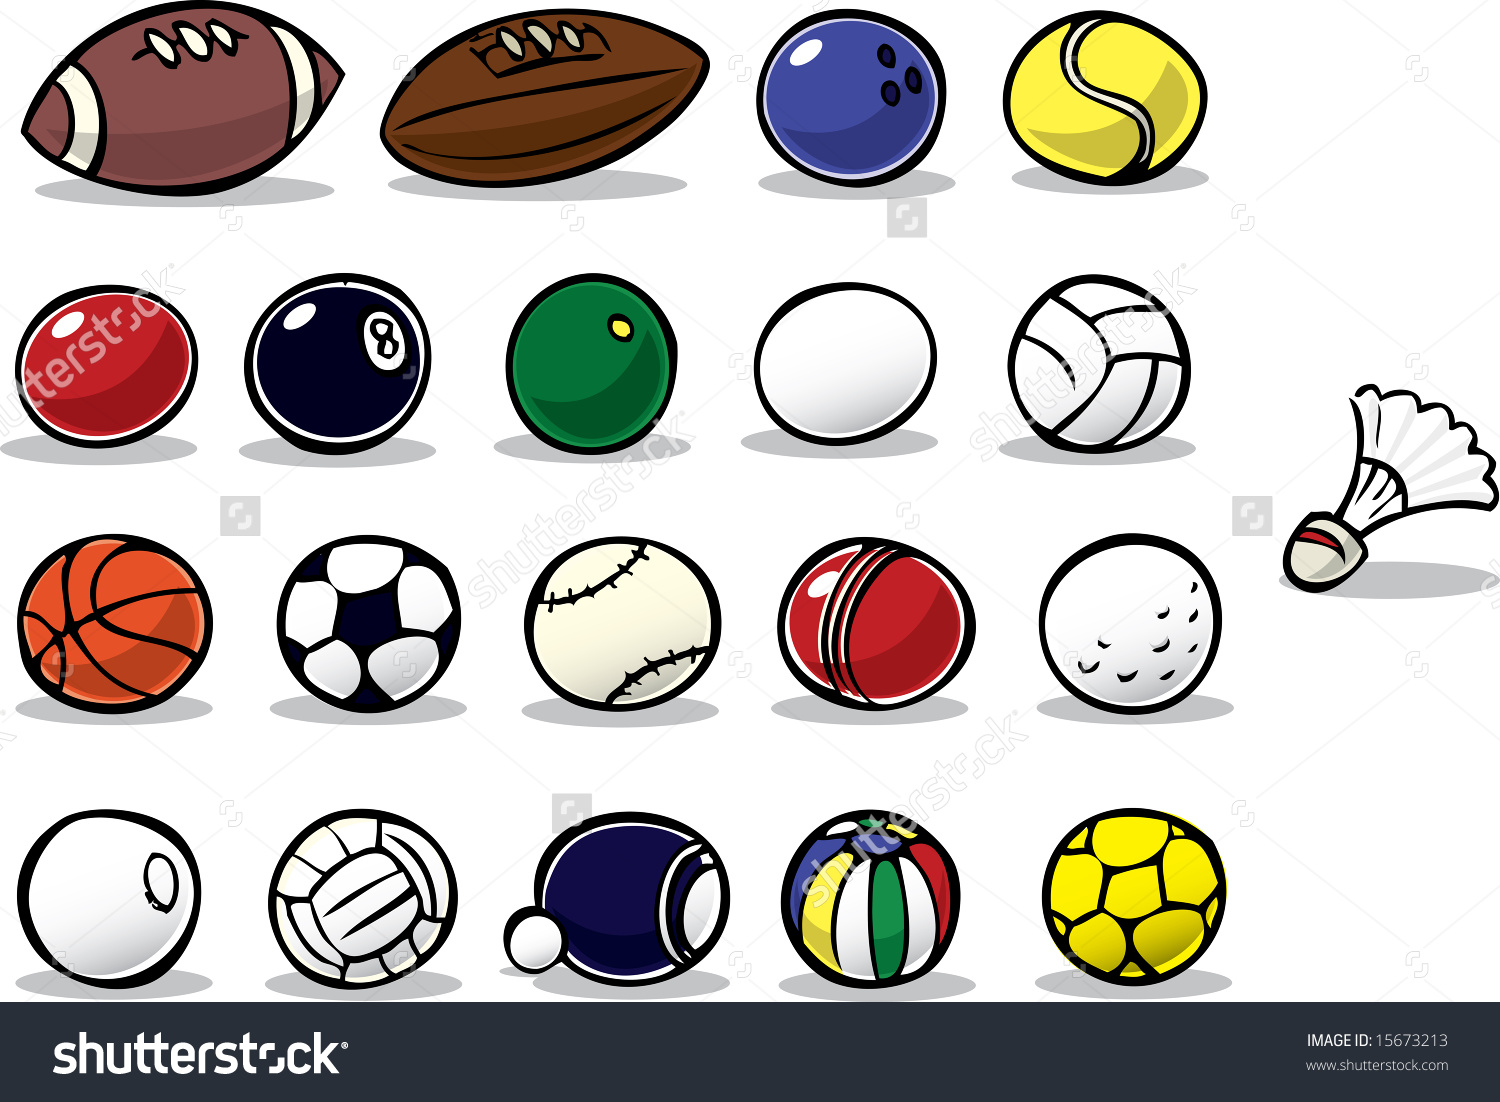 Нарисовать все спортивные мячи и их названия